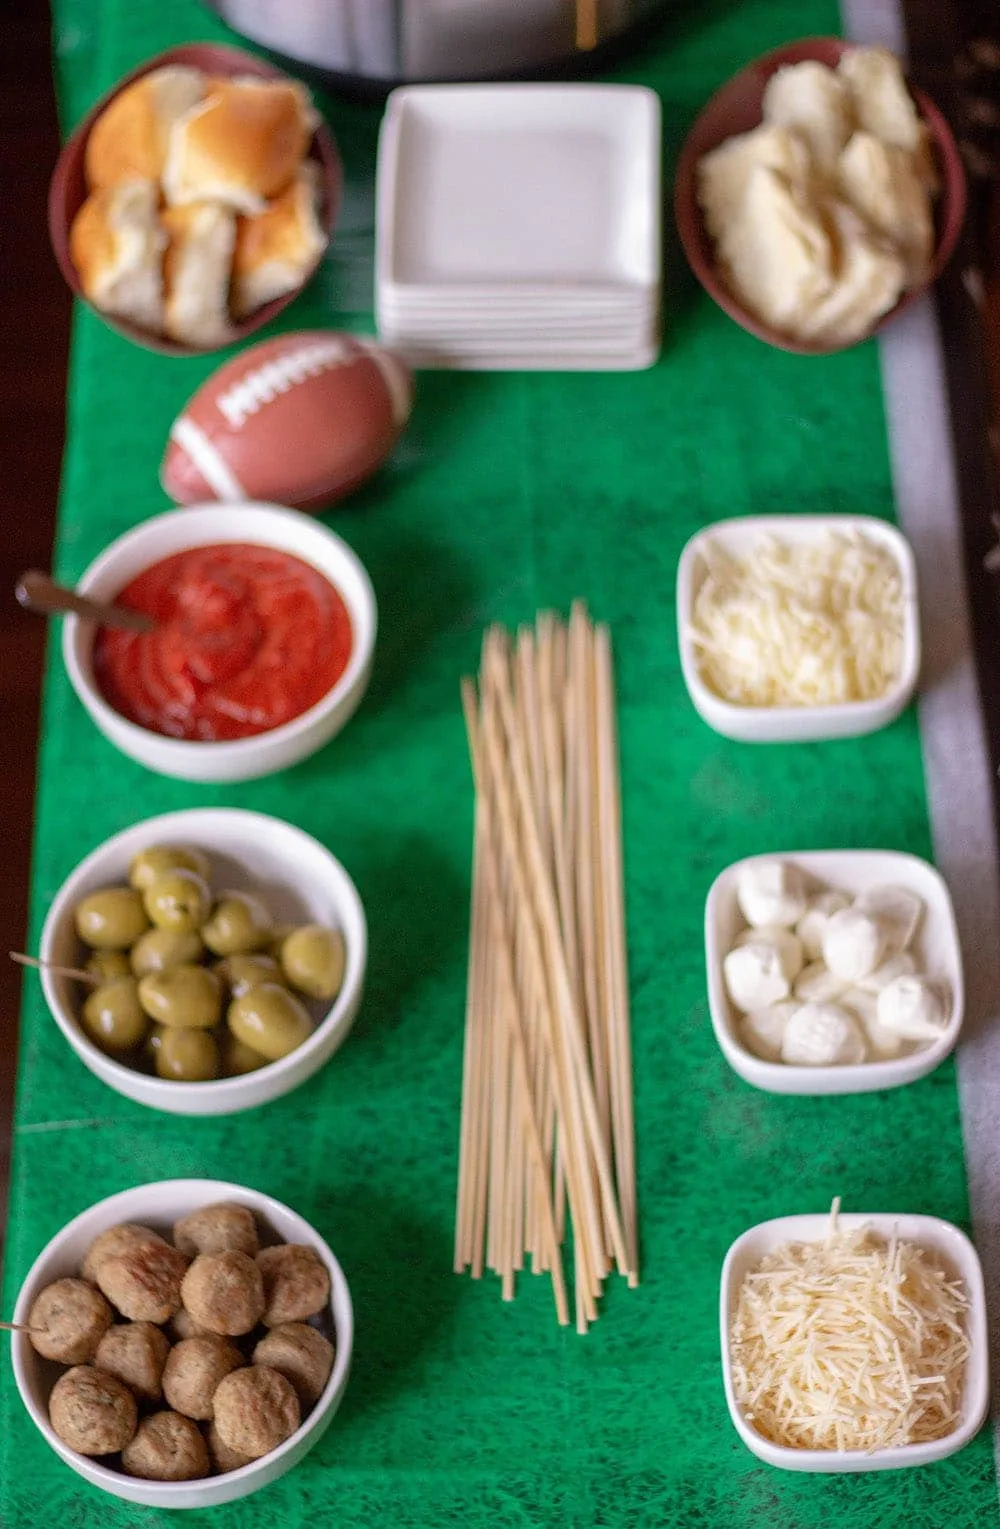 A table full of ingredients to make meatballs sliders or skewers